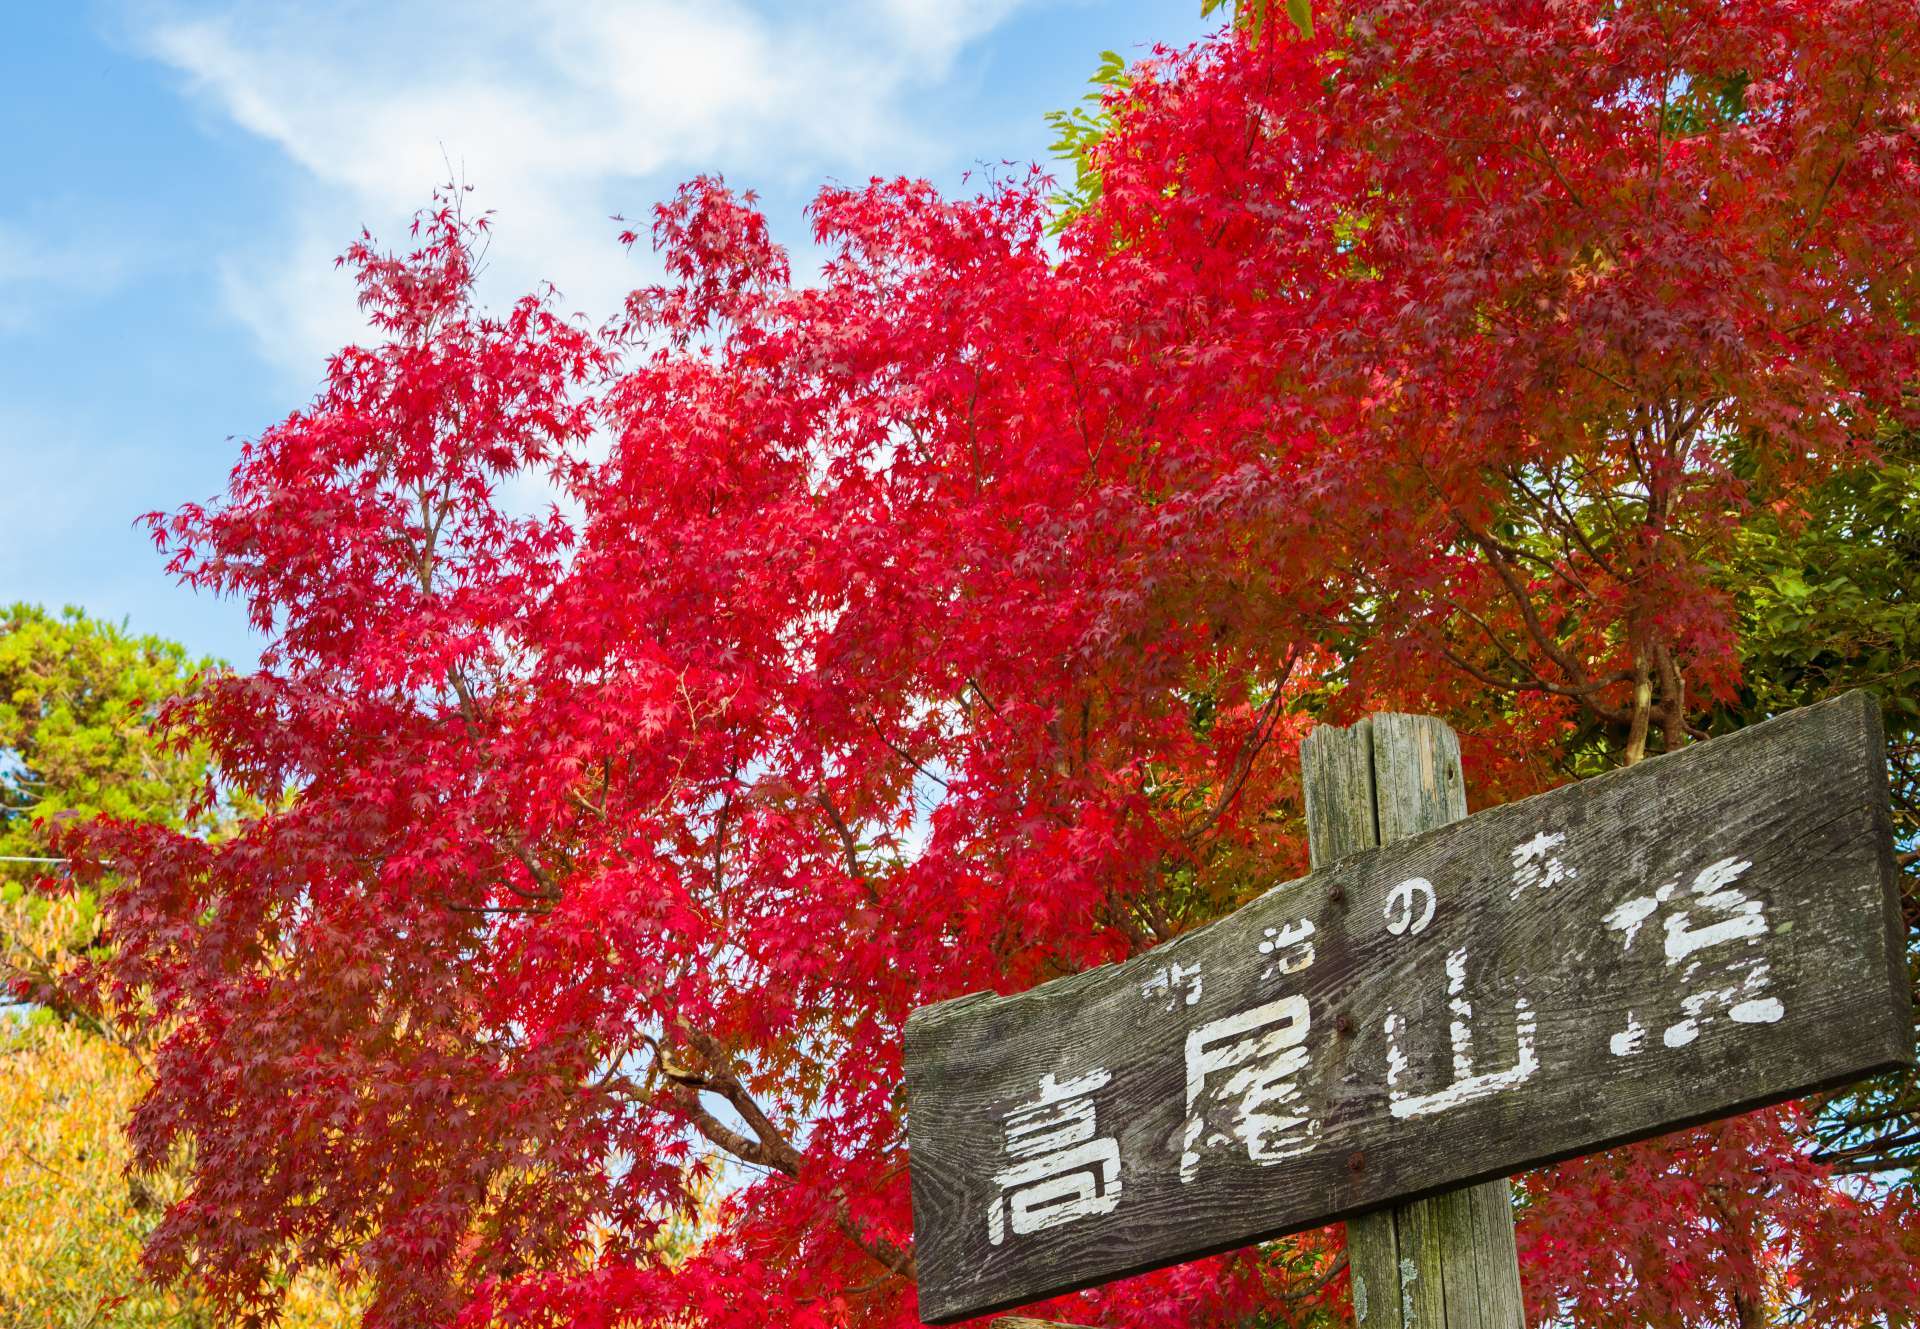 从东京都心只需50分钟的东京的后花园 东京最人气的红叶观景地点 高尾山 好运日本行